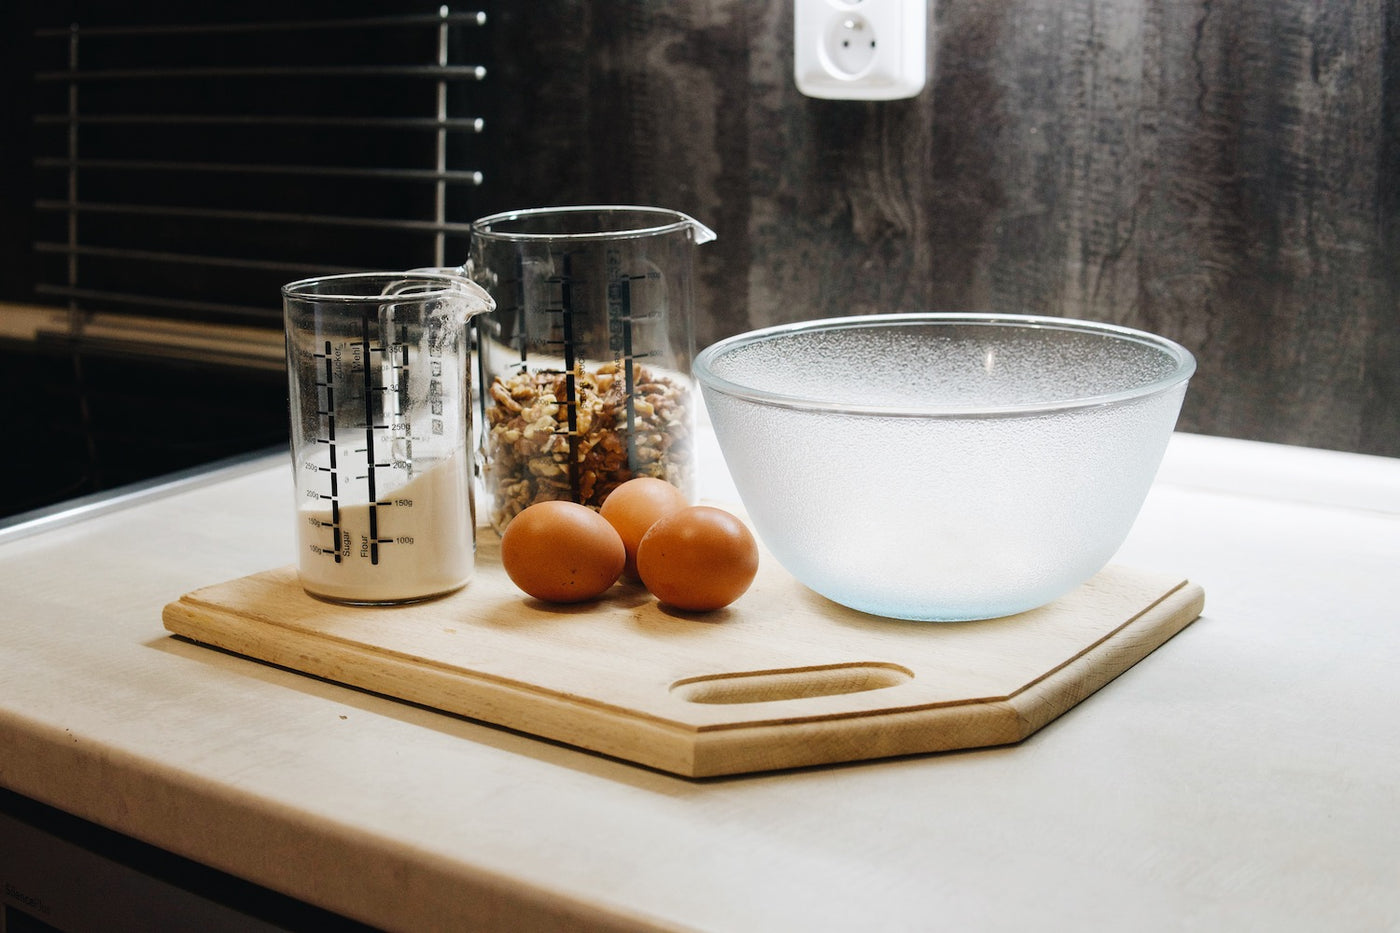 Skleněné kuchyňské odměrky Simax s ořechy a moukou a skleněná mísa Simax Frozen na kuchyňské lince